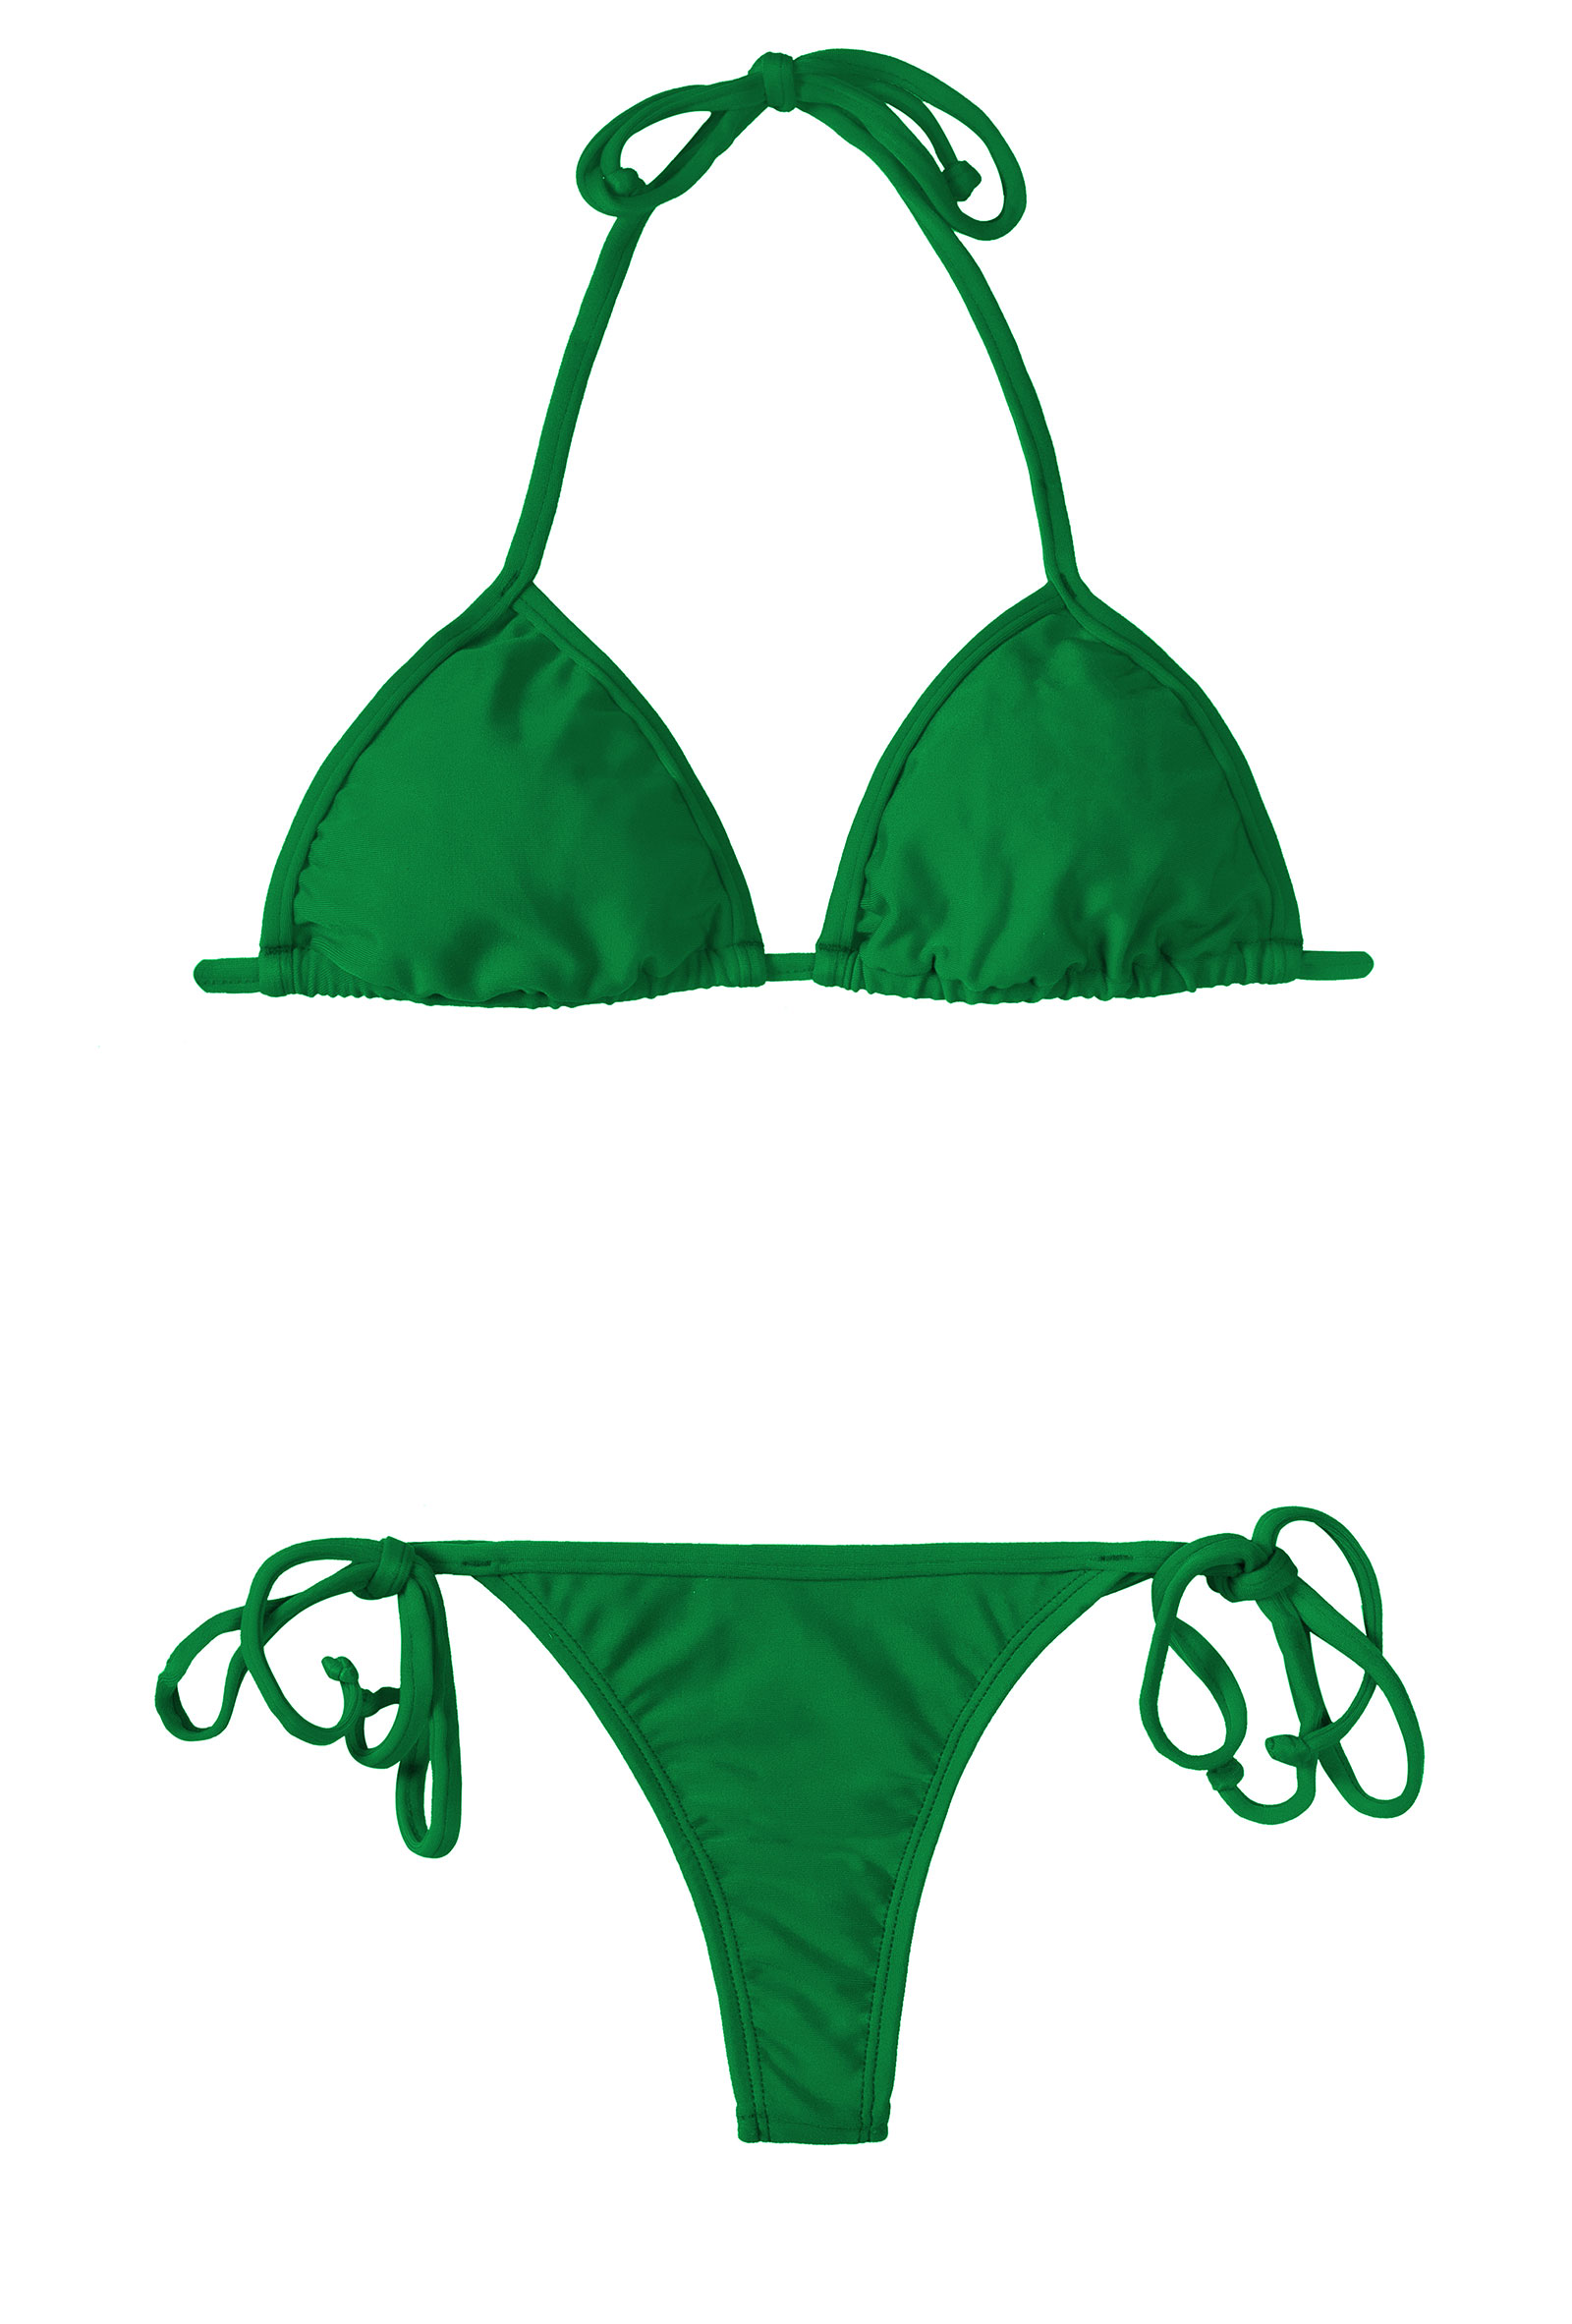 Green String Bikini - Big Fat Asian Tits